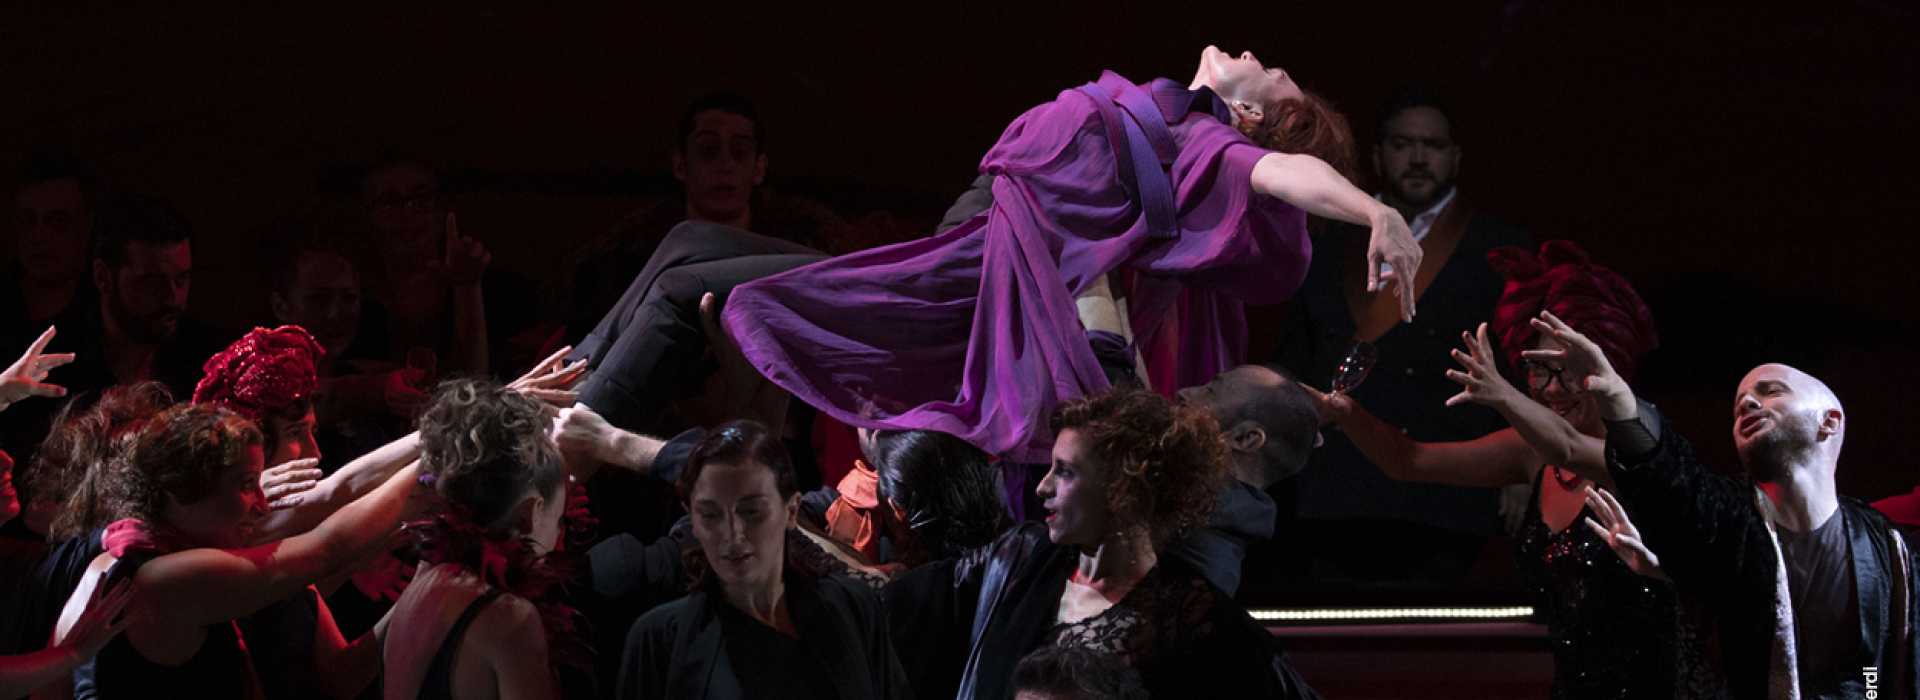 Emissió gratuïta de "La Traviata" per celebrar el Dia Mundial de l'Òpera